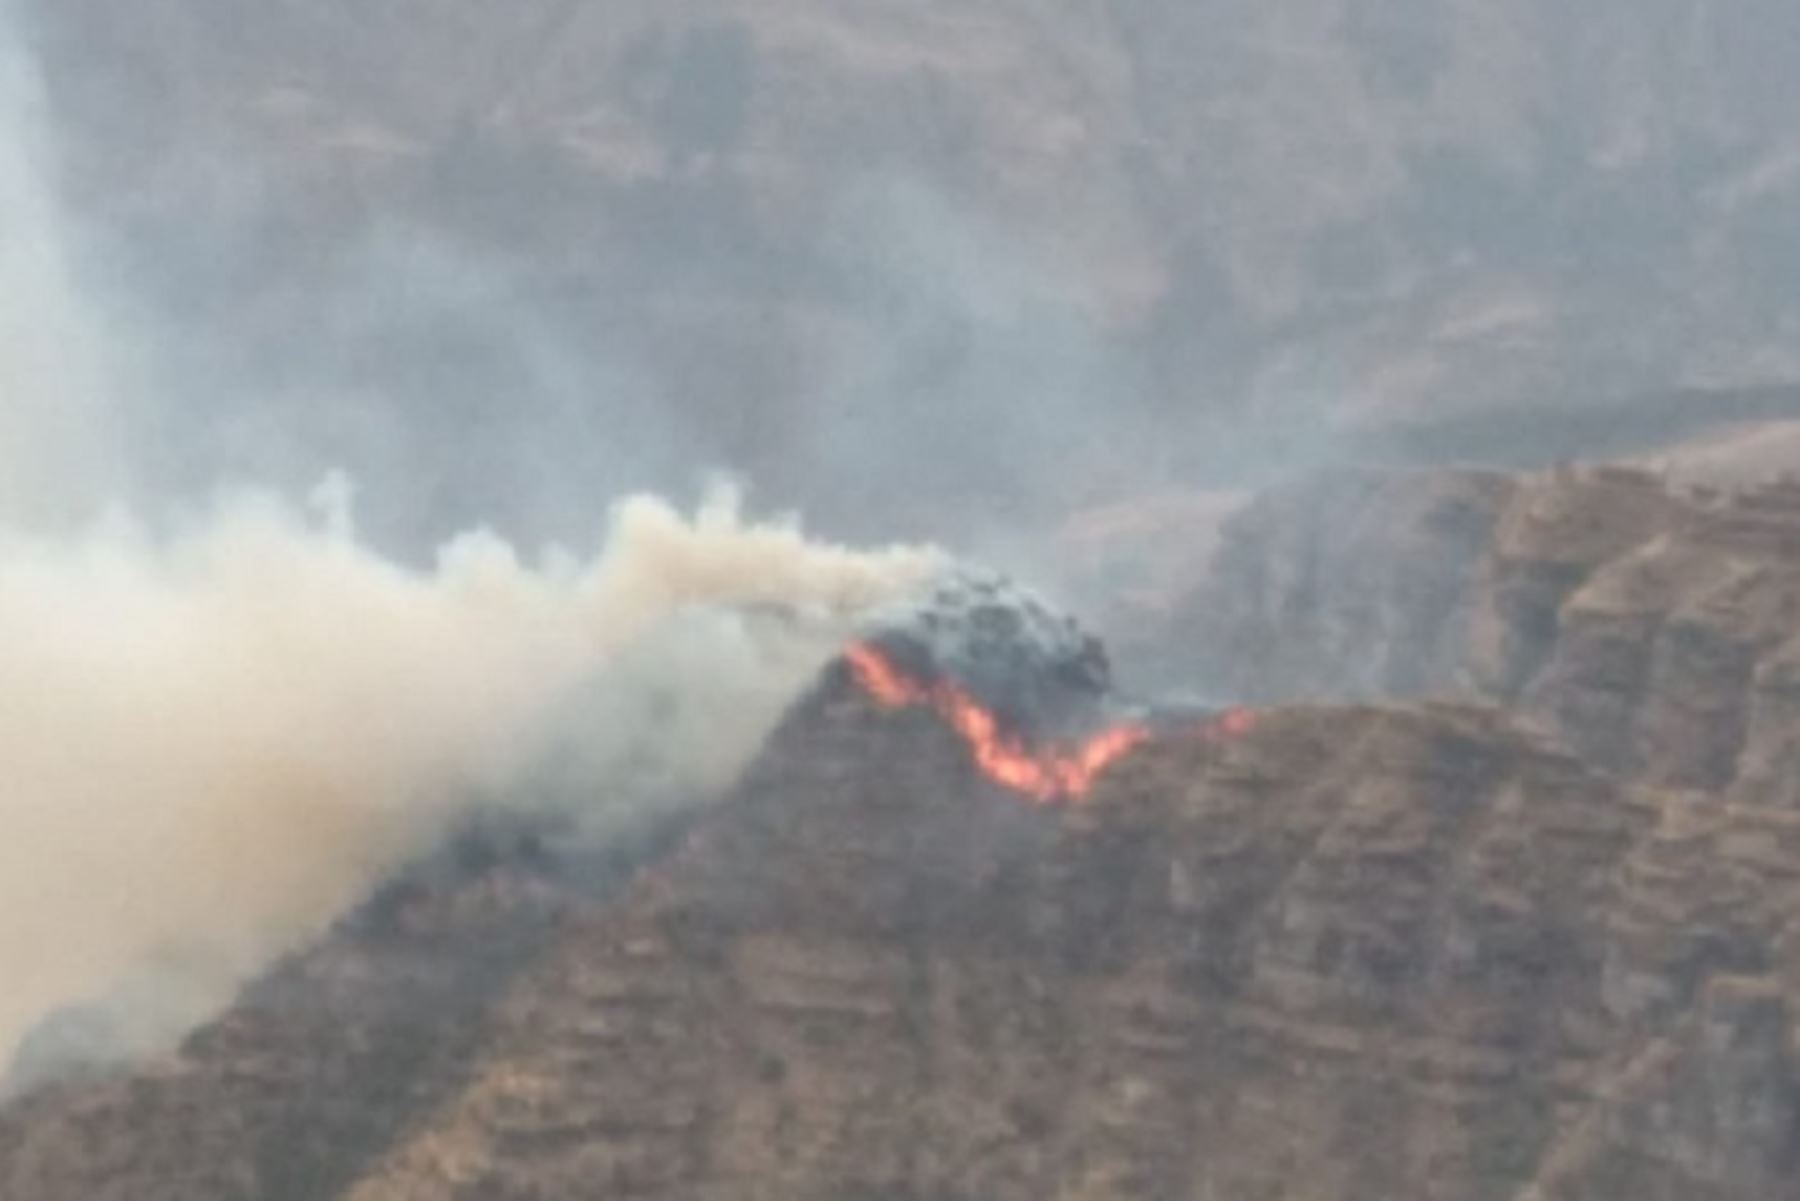 Bomberos, policías y miembros del Ejército del Perú luchan por controlar el incendio forestal iniciado el 20 de noviembre en Acos, región Cusco. Foto: ANDINA/Difusión